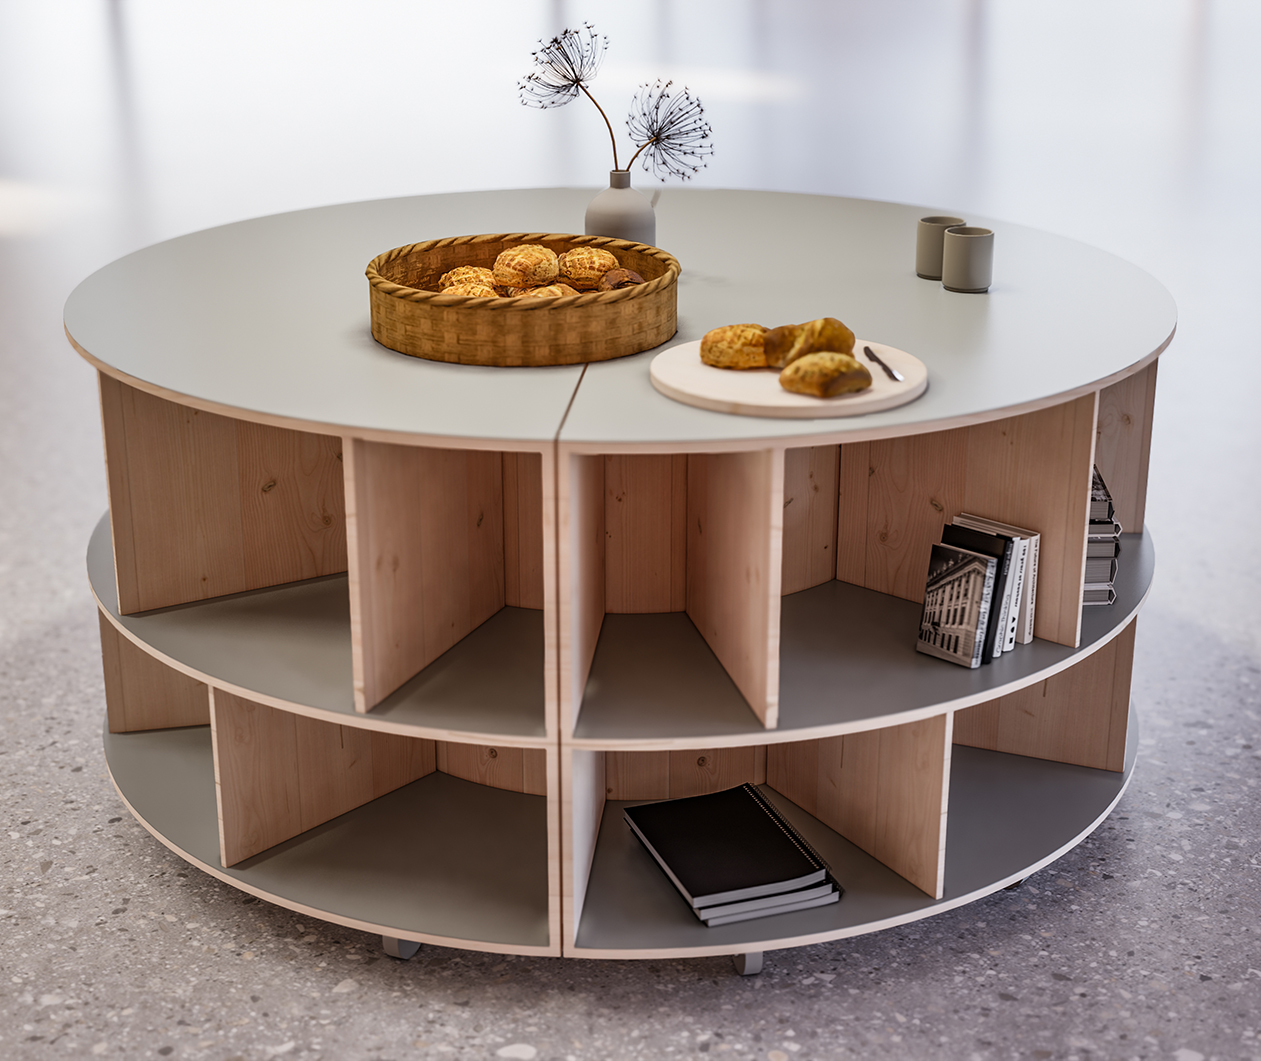 Laden - Brøruphus - visualisering af buffetbordet i salen